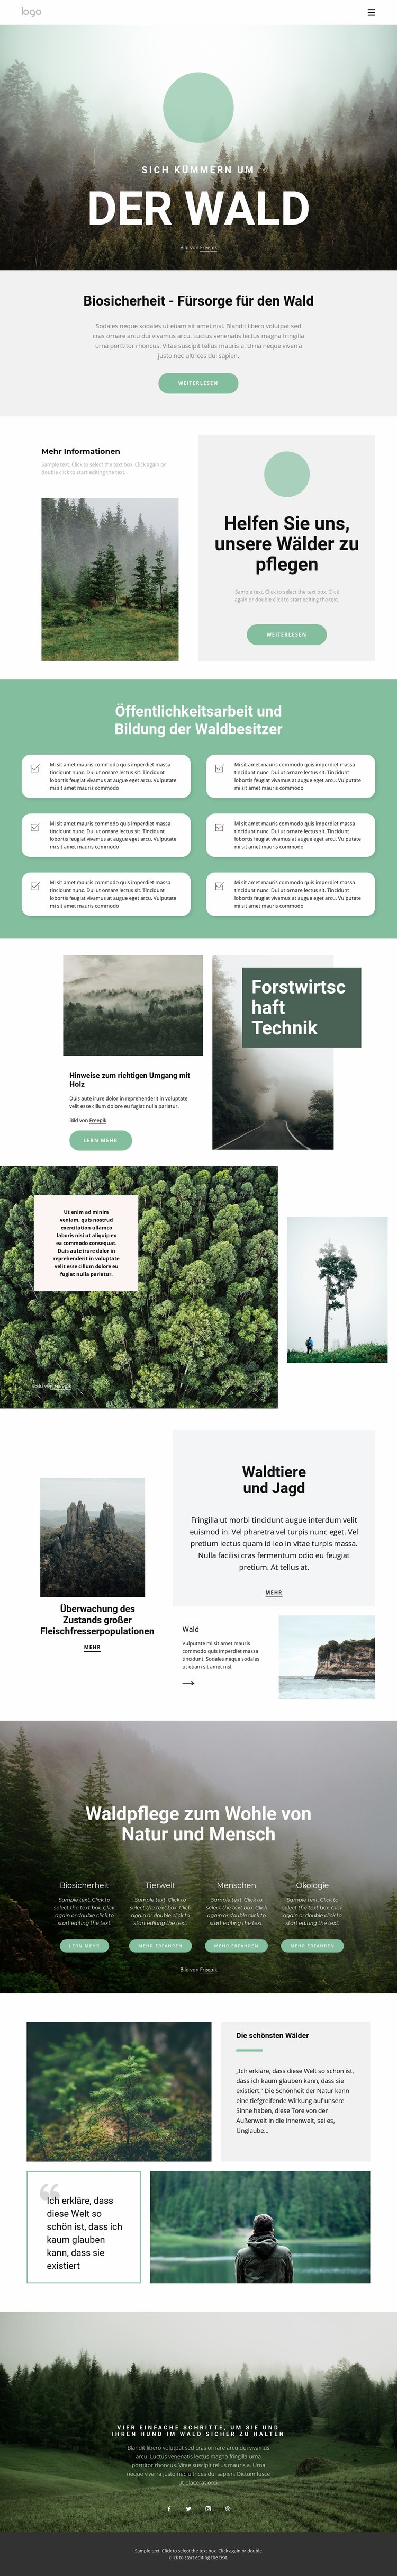 Pflege von Parks und Wäldern Website-Modell